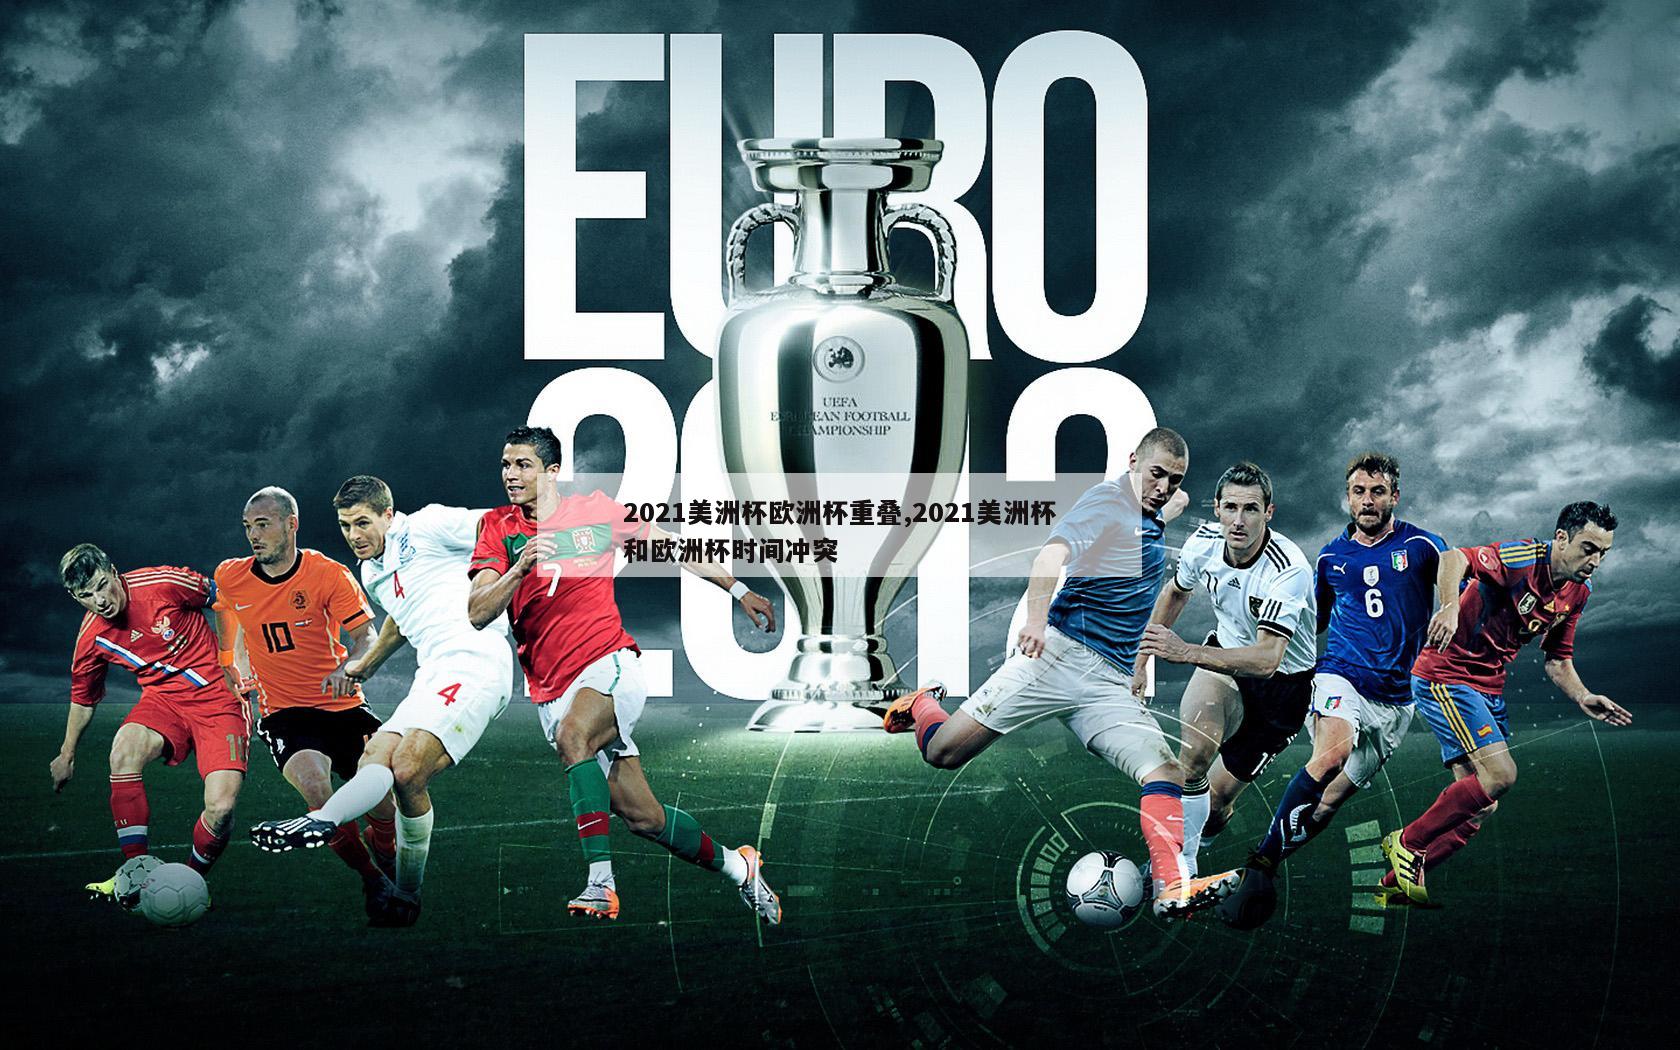 2021美洲杯欧洲杯重叠,2021美洲杯和欧洲杯时间冲突